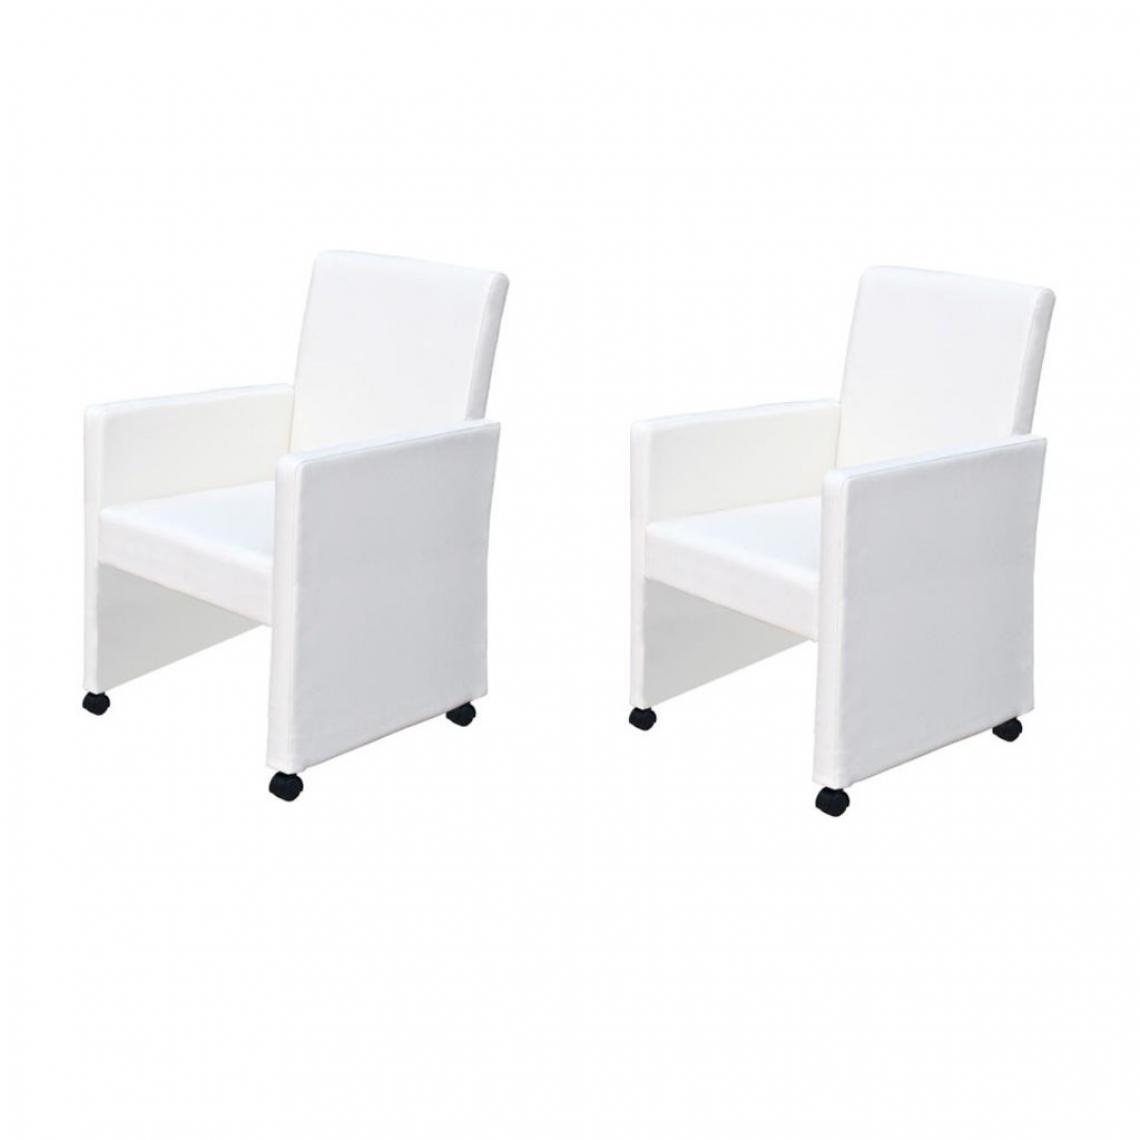 Decoshop26 - Lot de 2 chaises de salle à manger cuisine design moderne et ergonomique sur roulettes blanc similicuir CDS020204 - Chaises